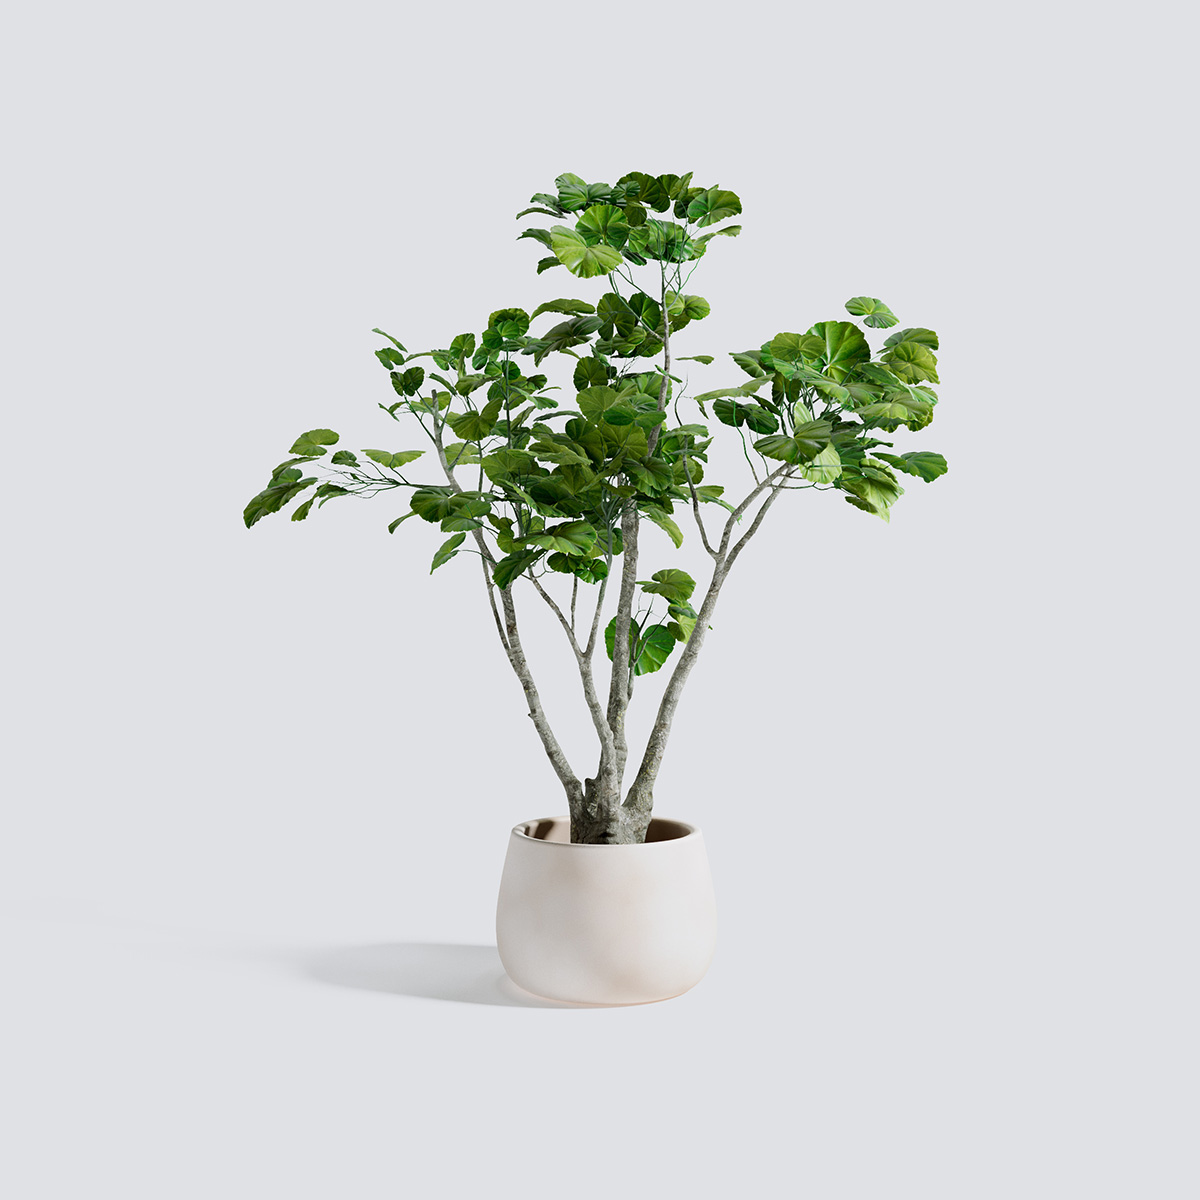 مدل سه بعدی گل و گیاهان آپارتمانی - 23